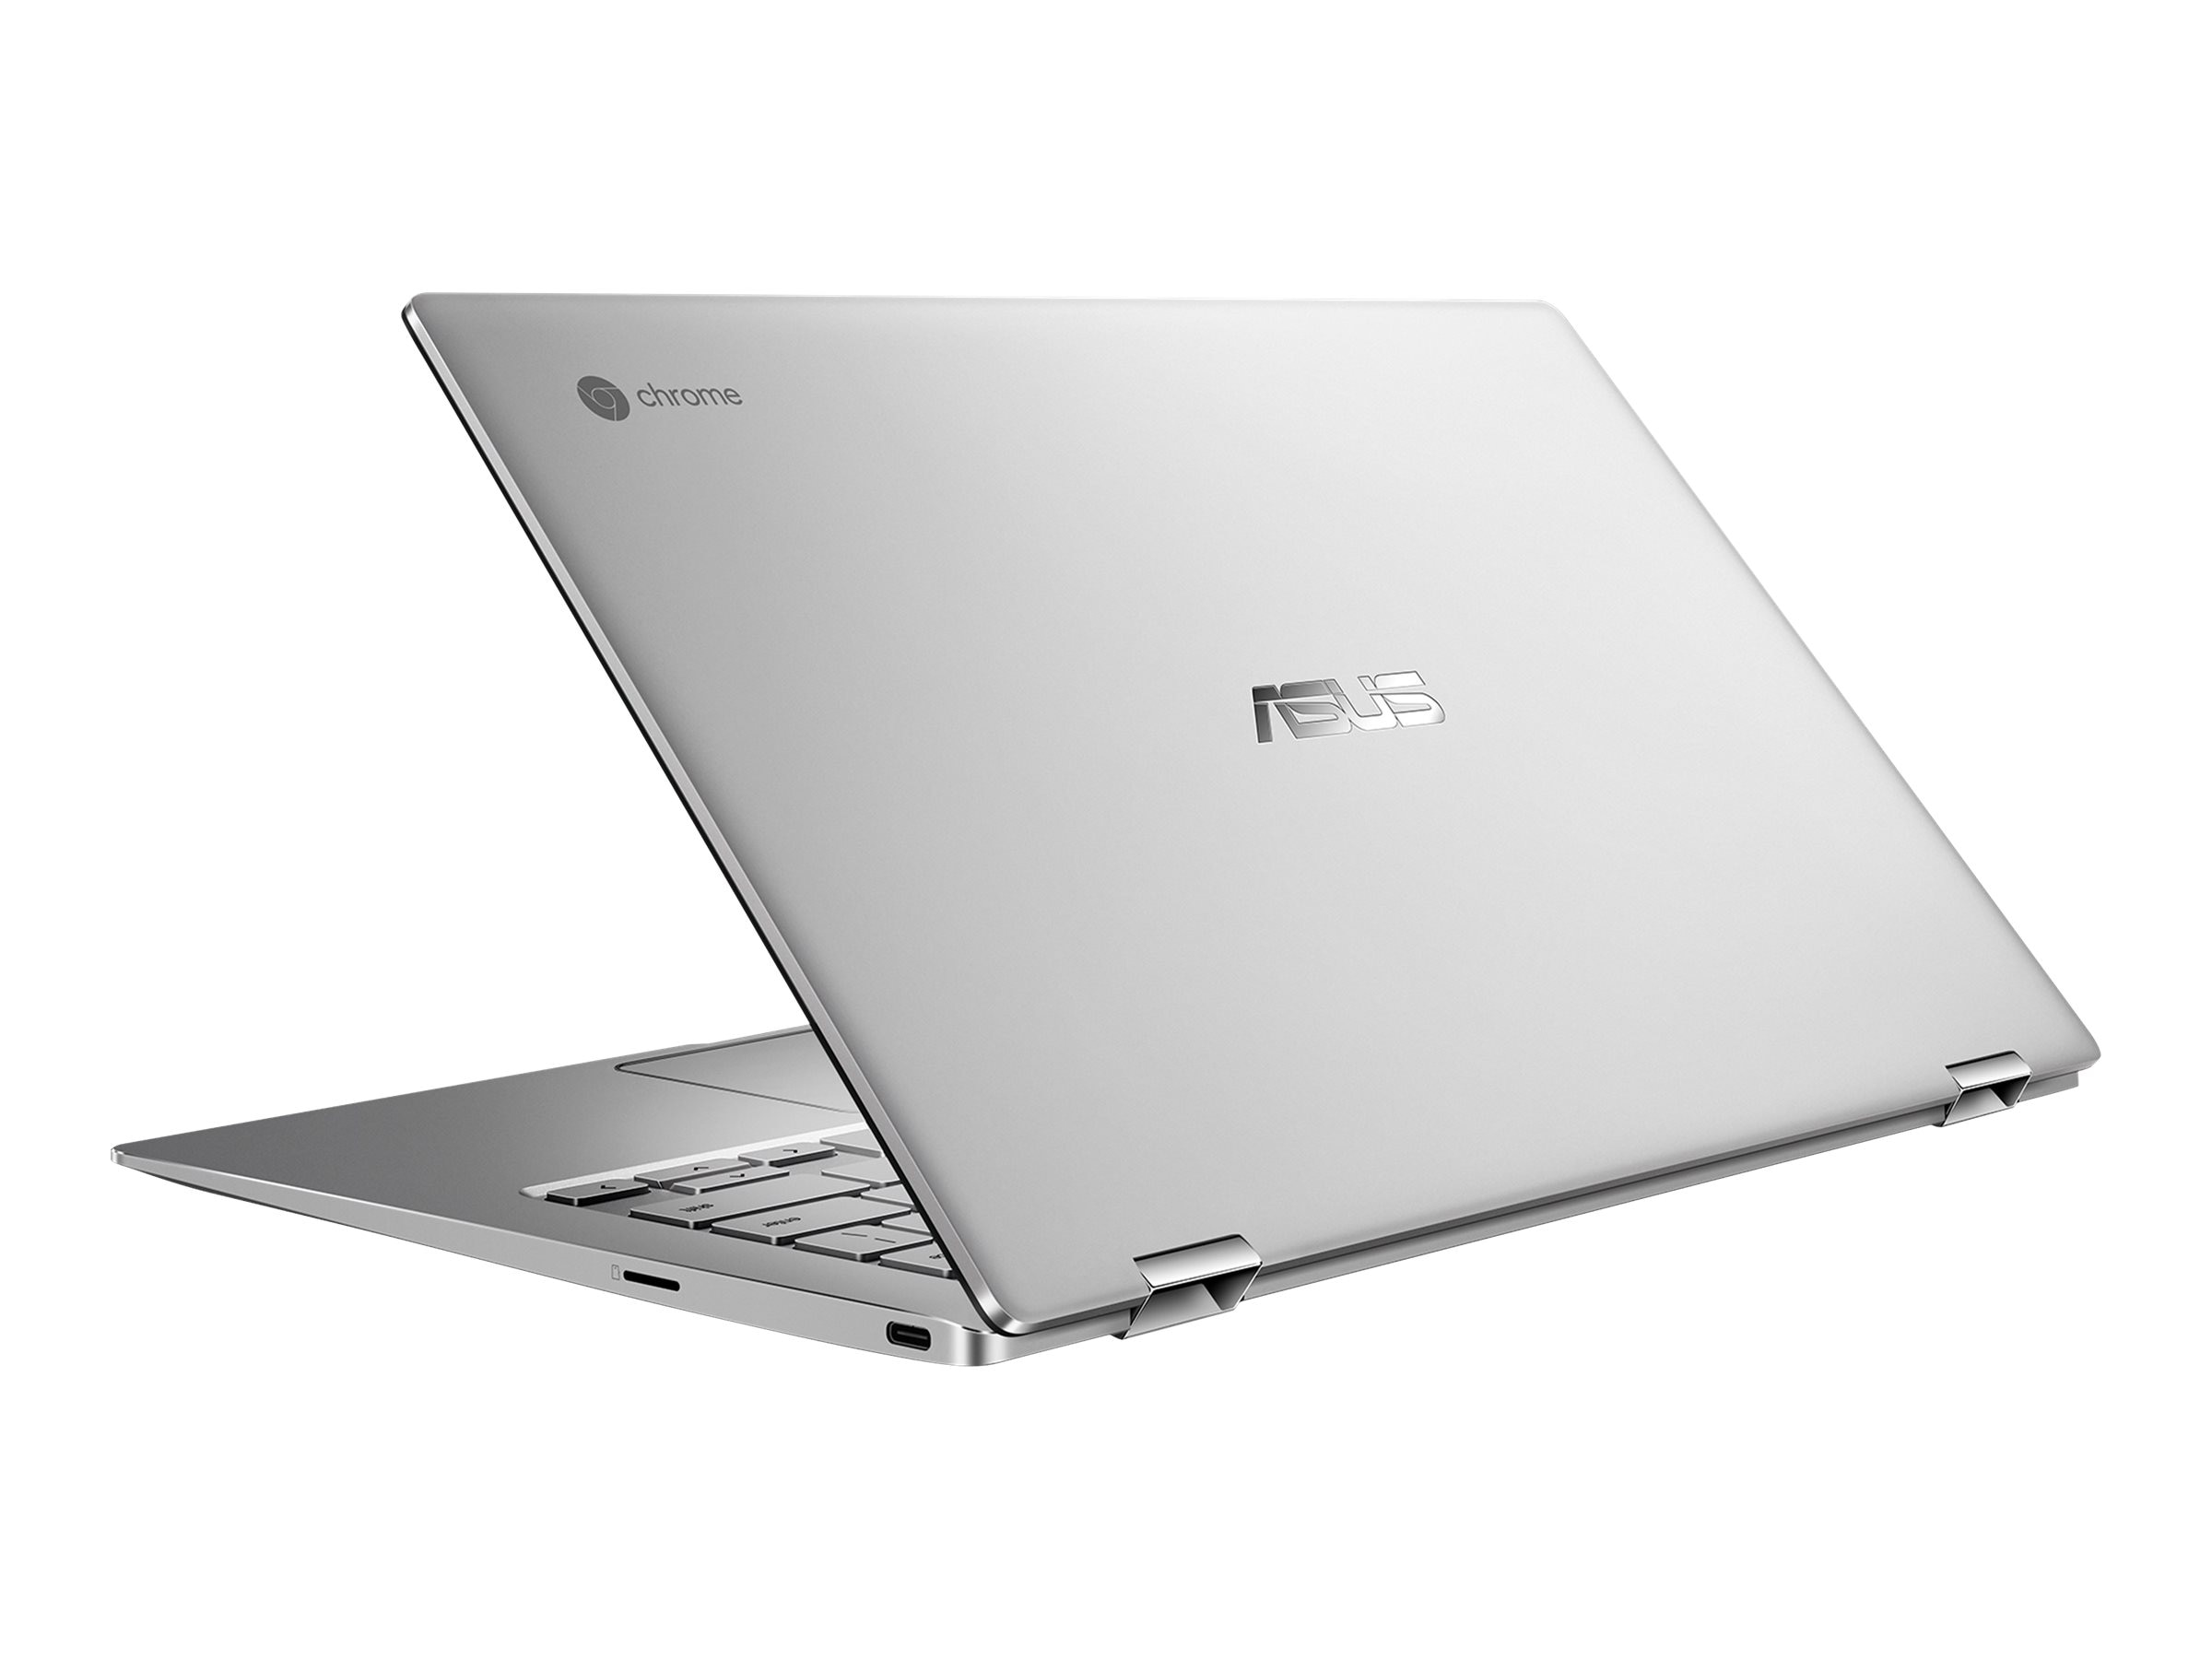 Asus Chromebook Flip Core m3-8100Y 3.4GHz 8GB 64GB eMMC ac BT